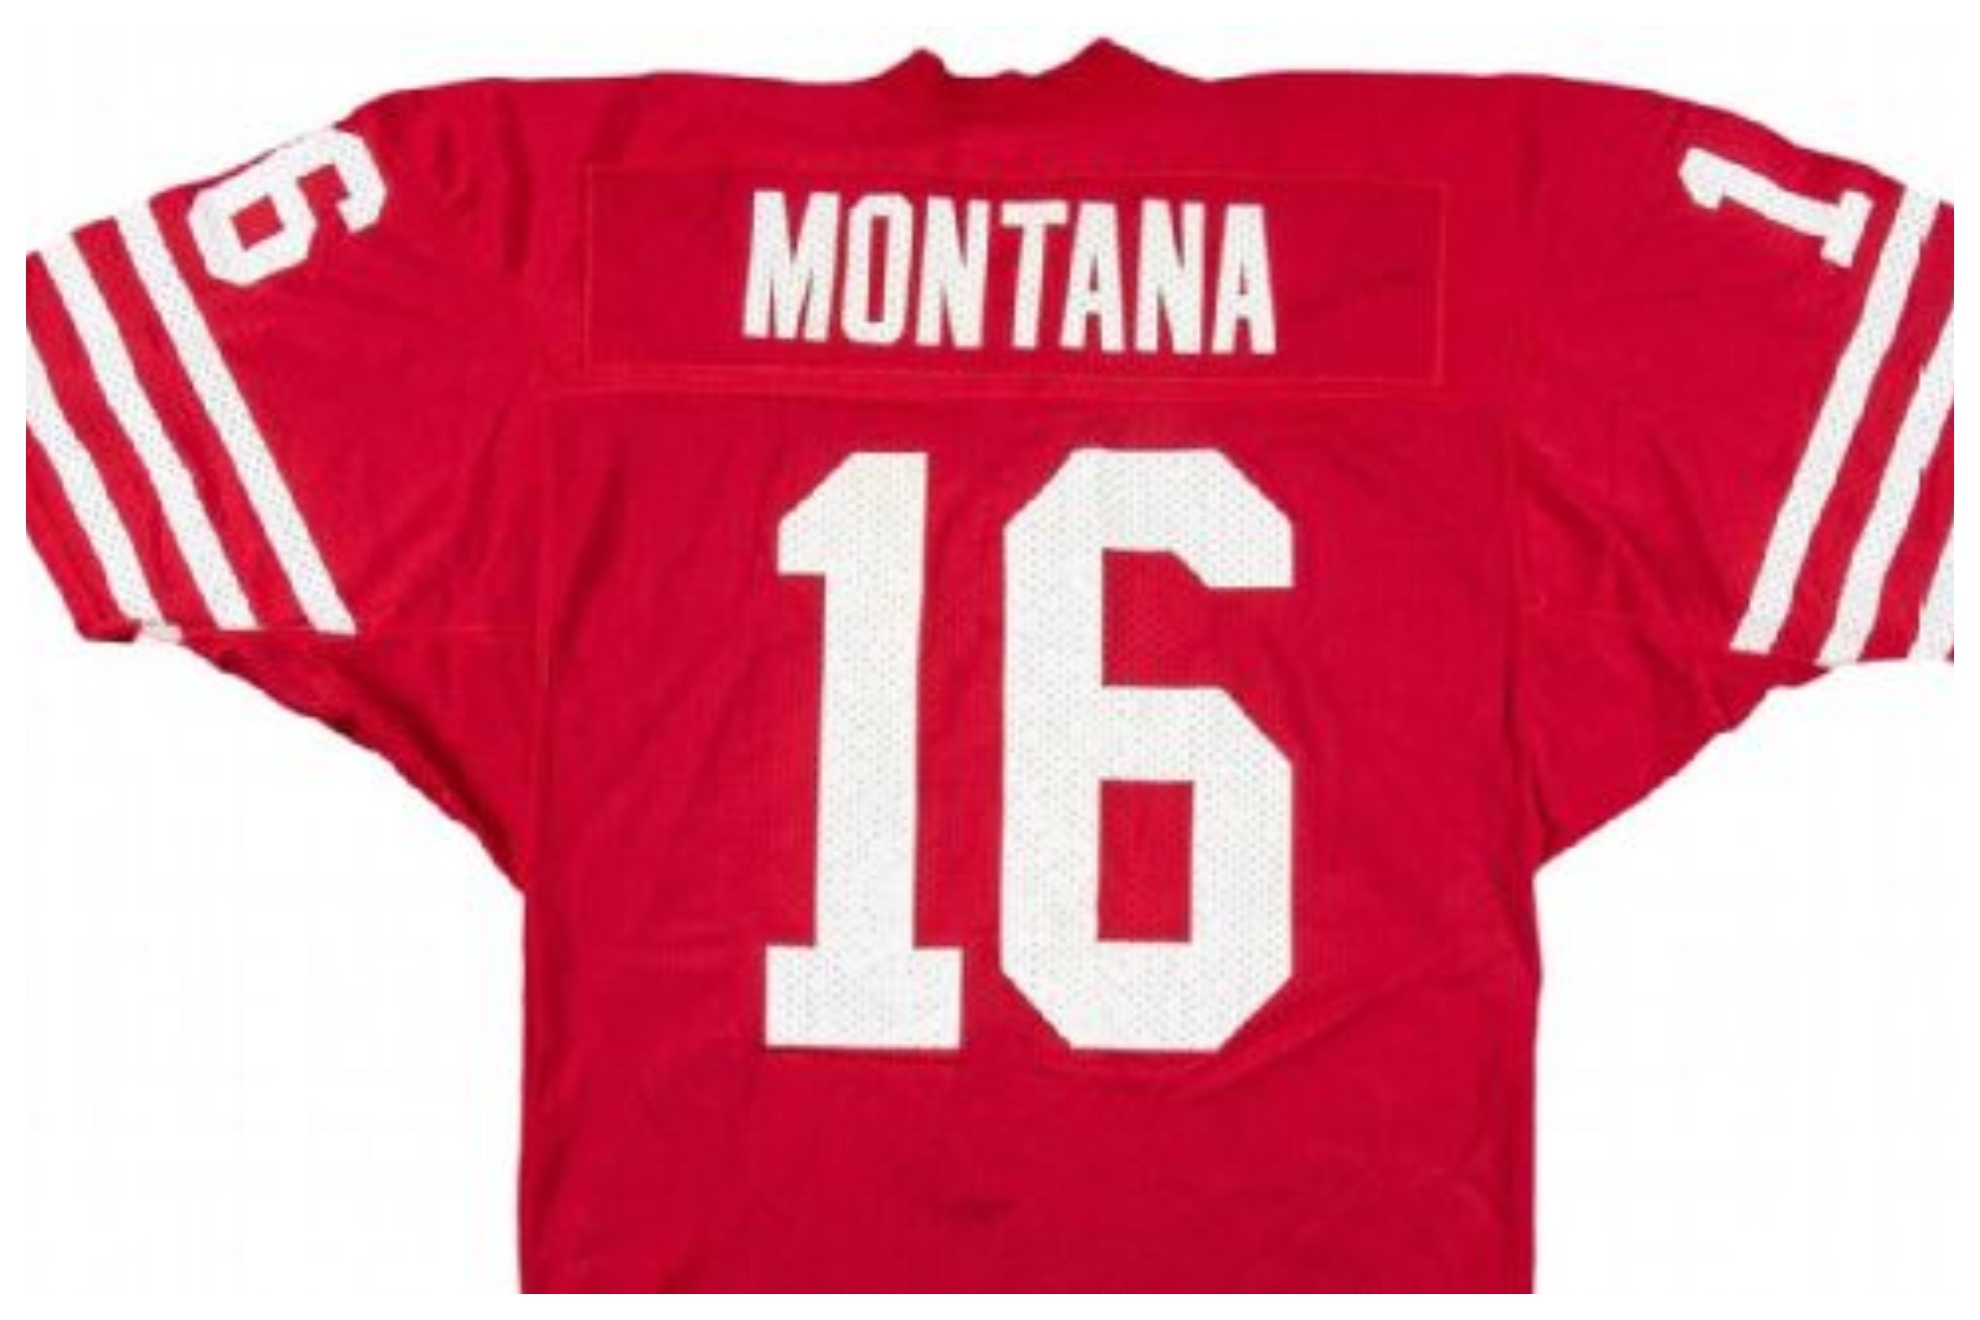 Una camiseta de Montana, subastada por un récord de 1,2 millones de dólares